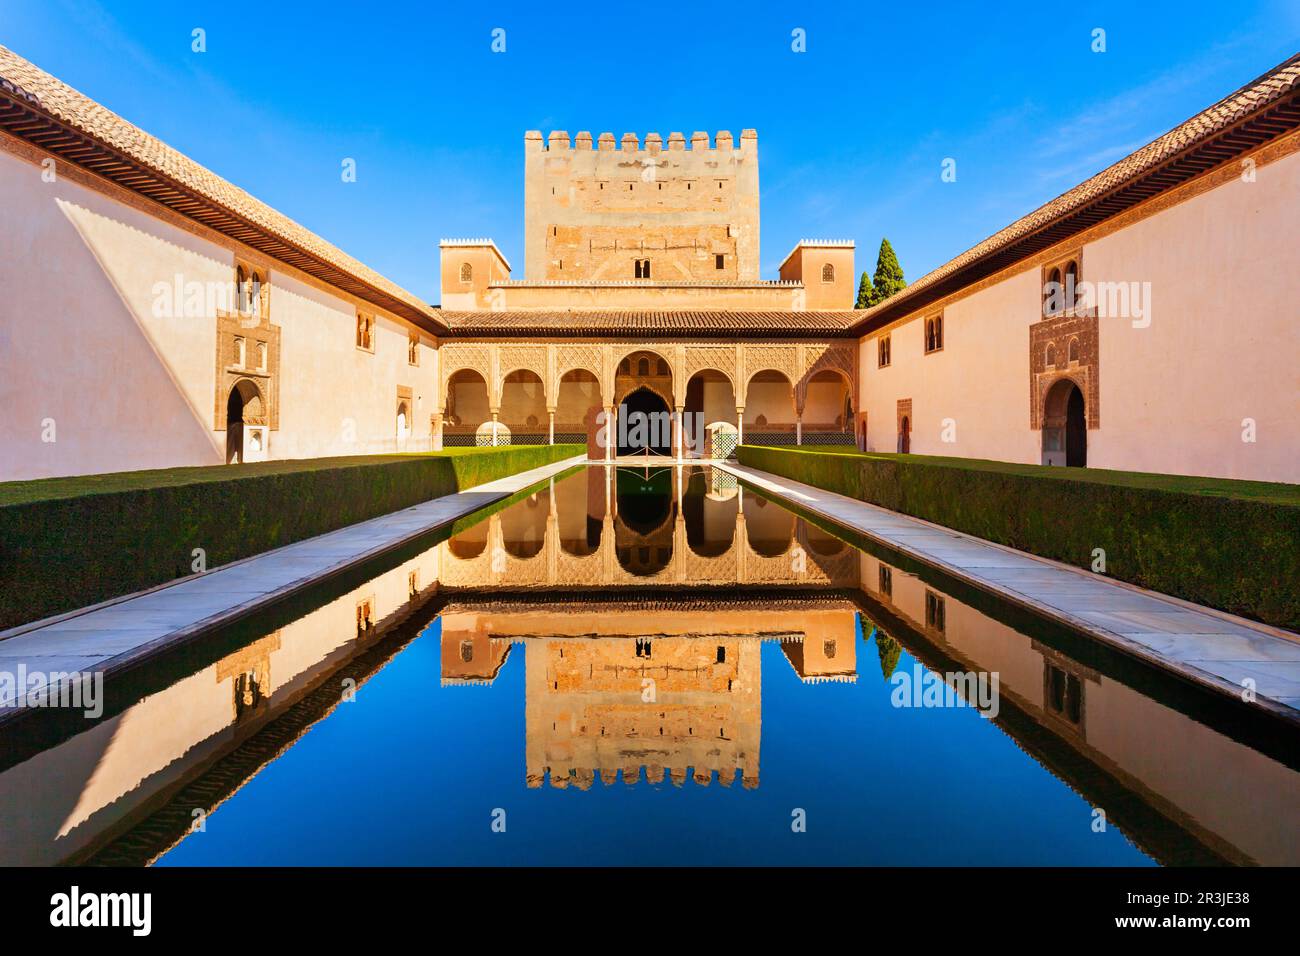 La Corte dei Myrtles è la parte centrale del Palazzo Comares all'interno del complesso del palazzo dell'Alhambra a Granada, Spagna Foto Stock